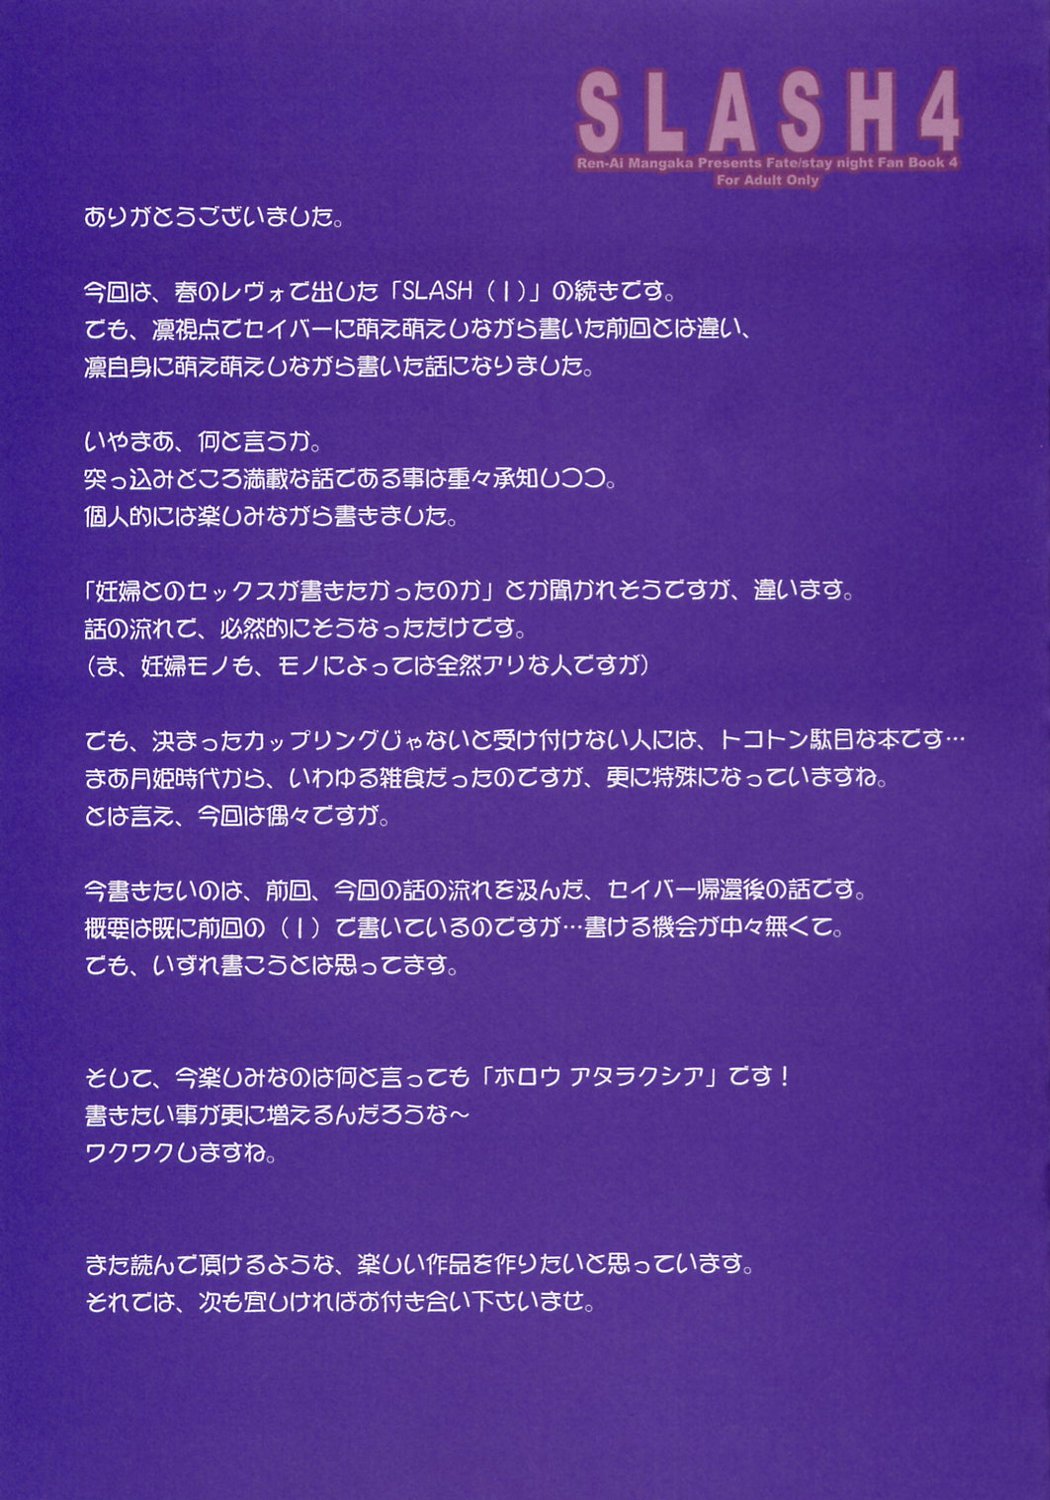 (C67) [Renai Mangaka (Naruse Hirofumi)] SLASH 4 (Fate/stay night) page 24 full